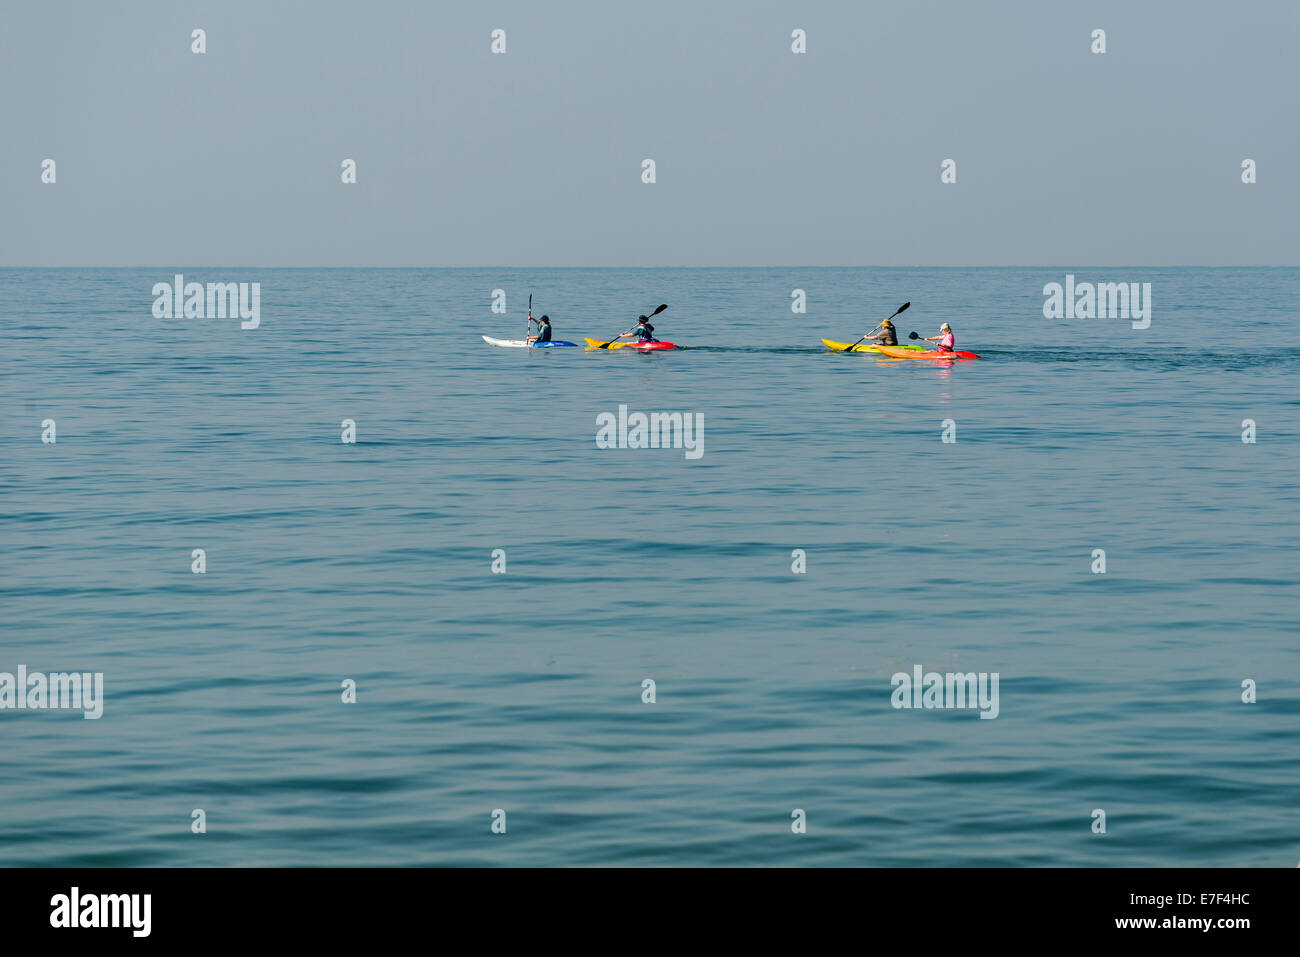 Kayakers in the open sea, Palolem Beach, Canacona, Goa, India Stock Photo